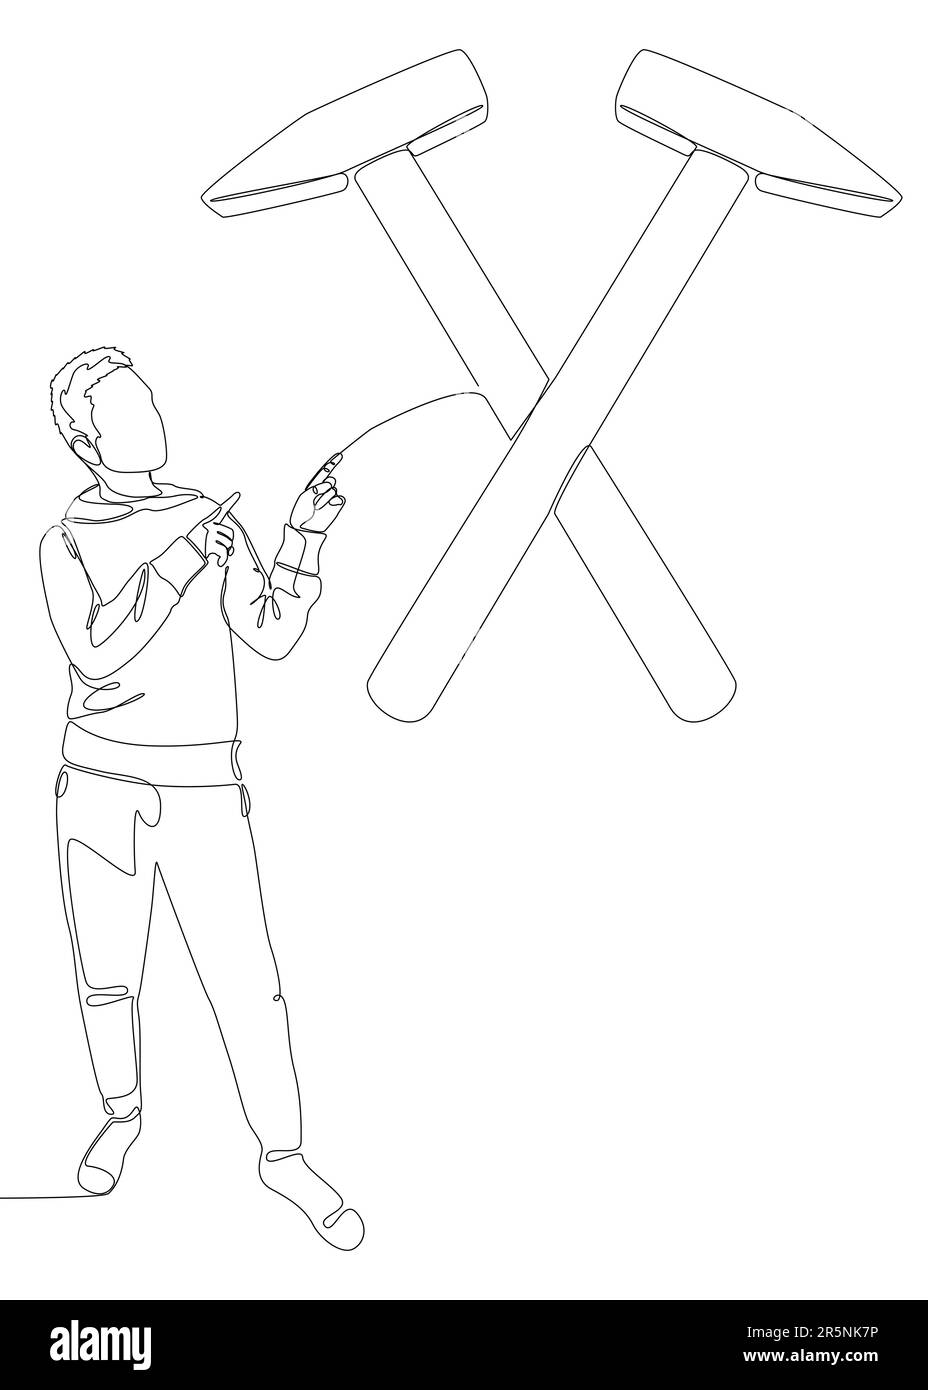 Eine durchgehende Linie von Mann, der mit dem Finger auf Hammer zeigt. Vektormodell für dünne Linien. Konturzeichnung kreative Craftsperson-Idee Stock Vektor